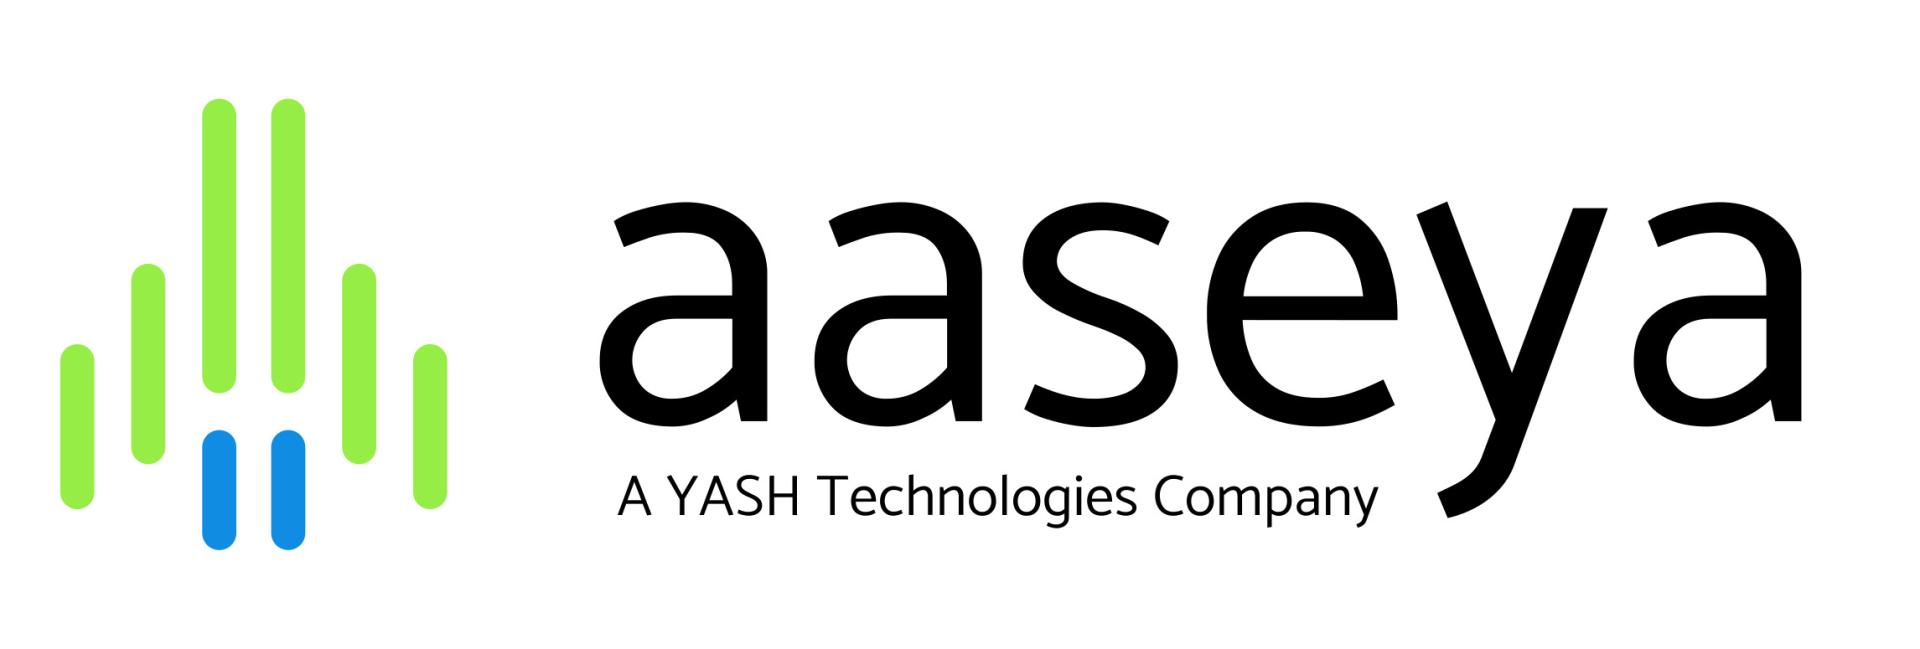 Aaseya company logo